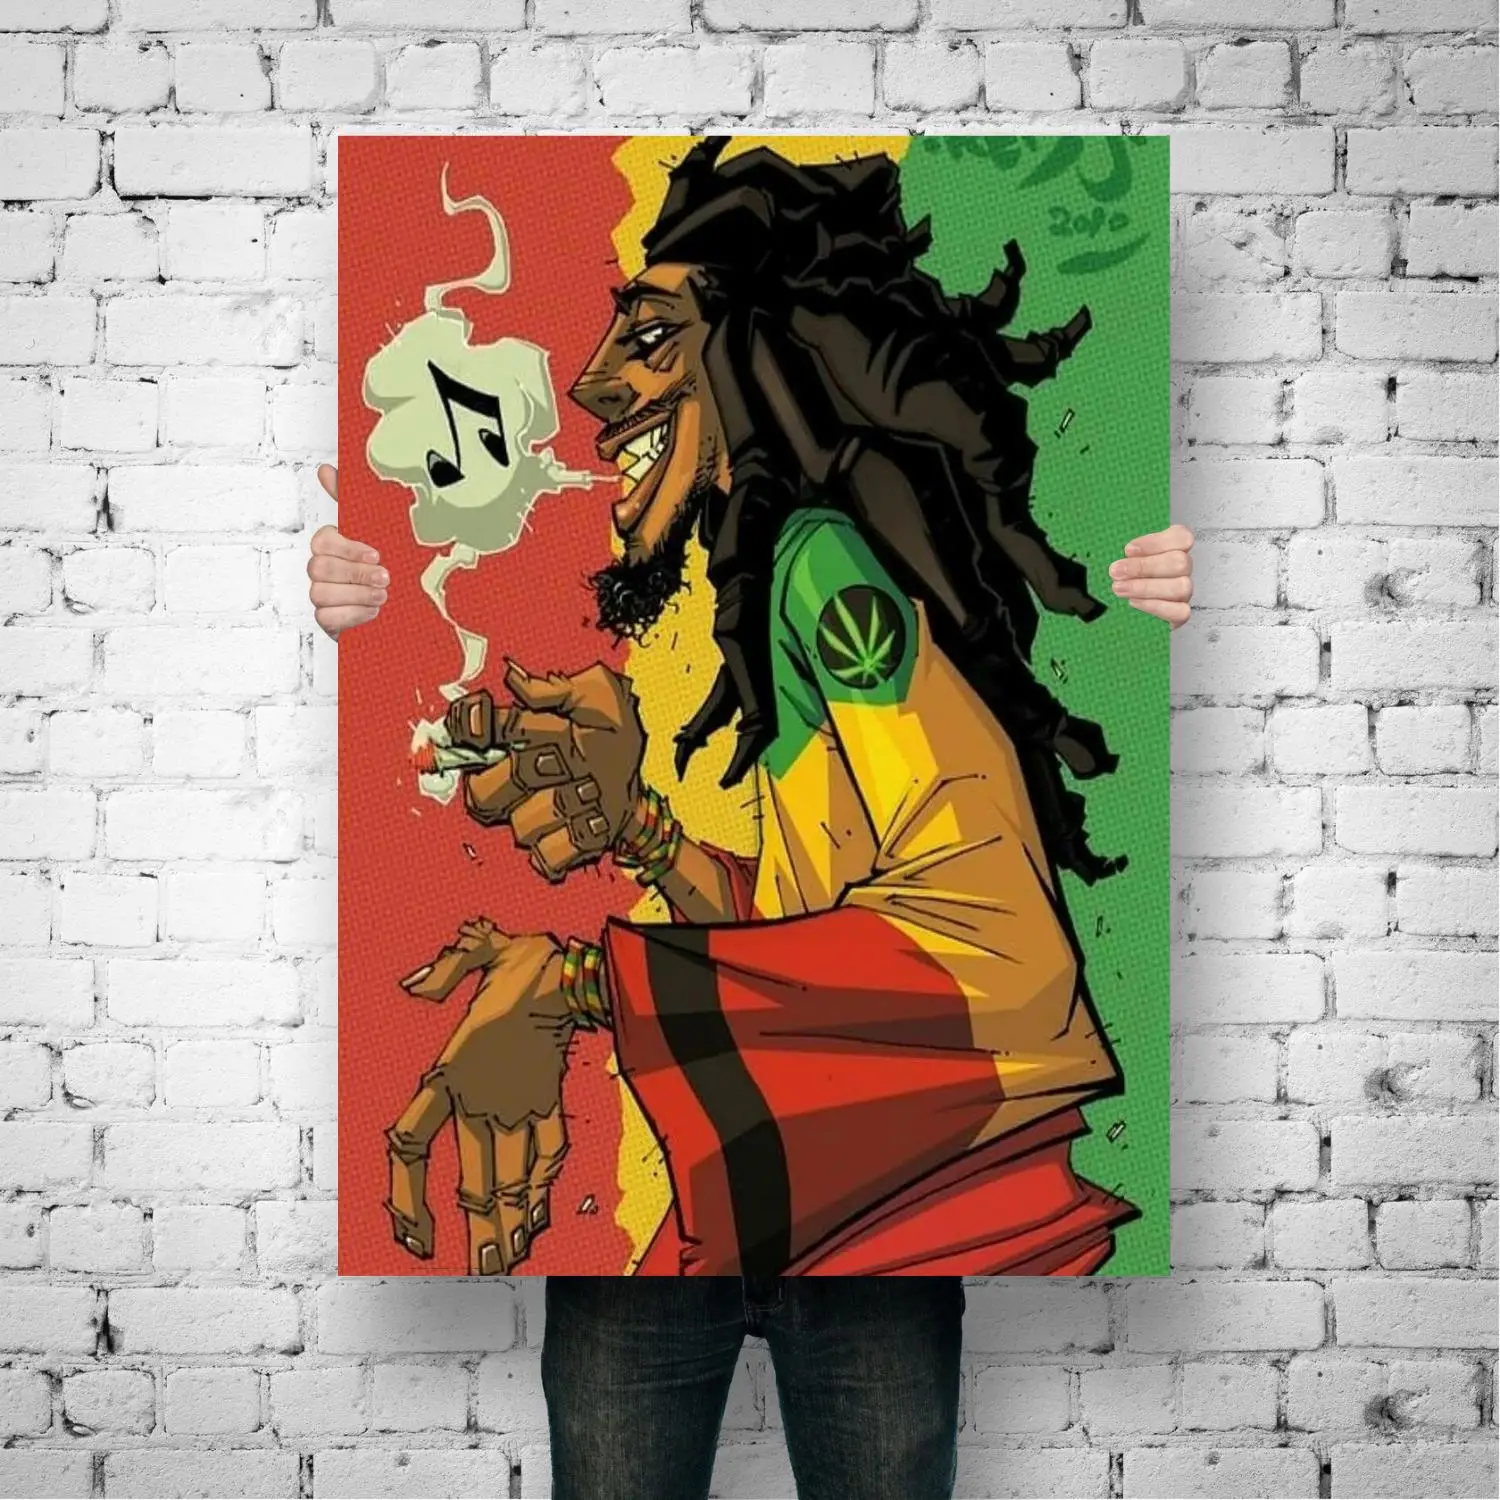 Peinture sur toile Bob Marley en caricature, tenue par une personne debout devant un mur de brique blanc